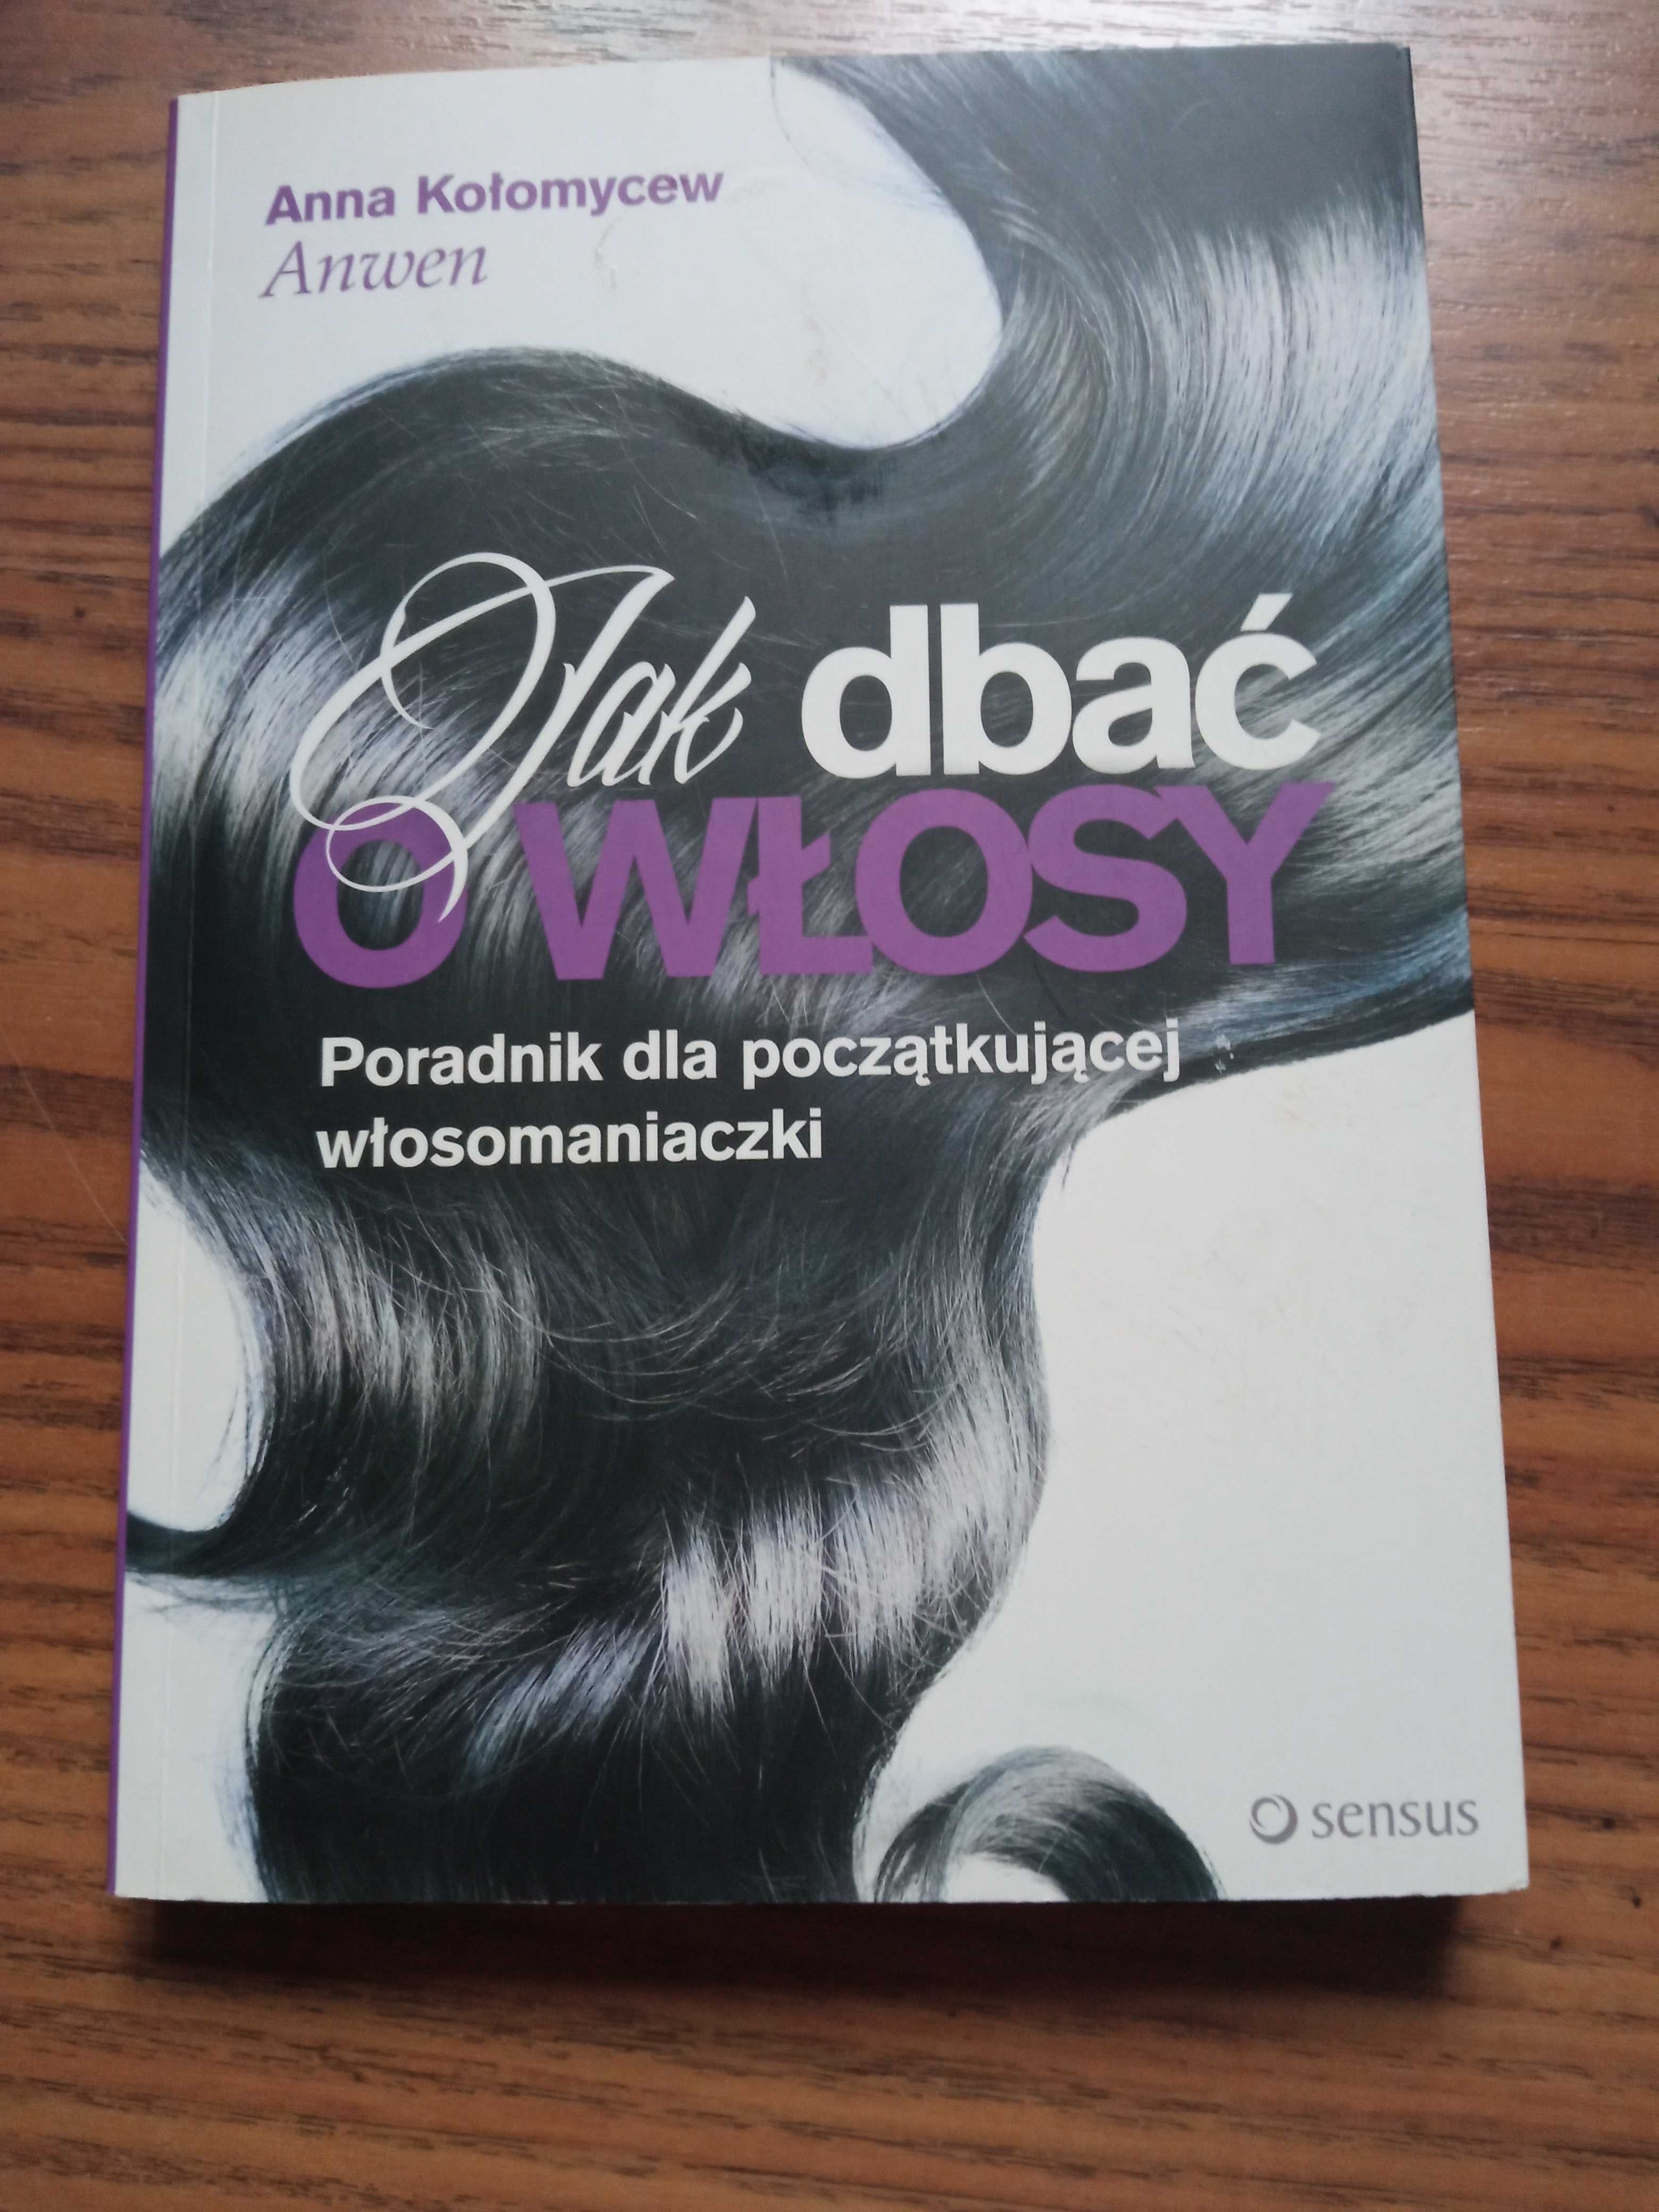 Książka "Jak dbać o włosy"